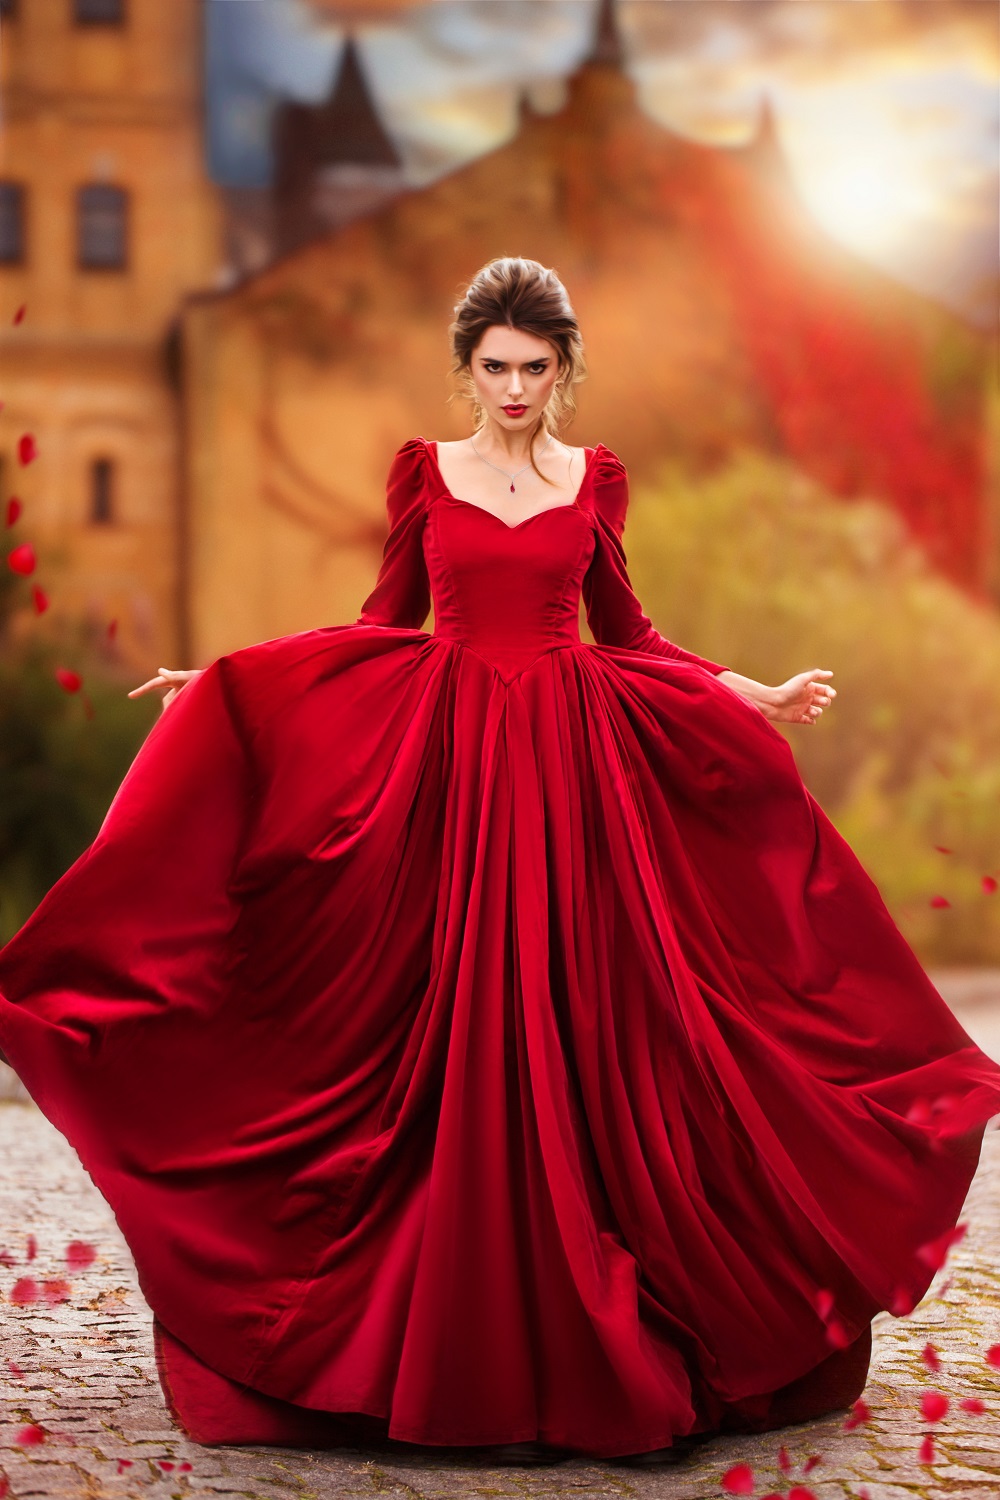 Kolorowe suknie ślubne. Piękna kobieta w długiej, bajkowej czerwonej sukni.